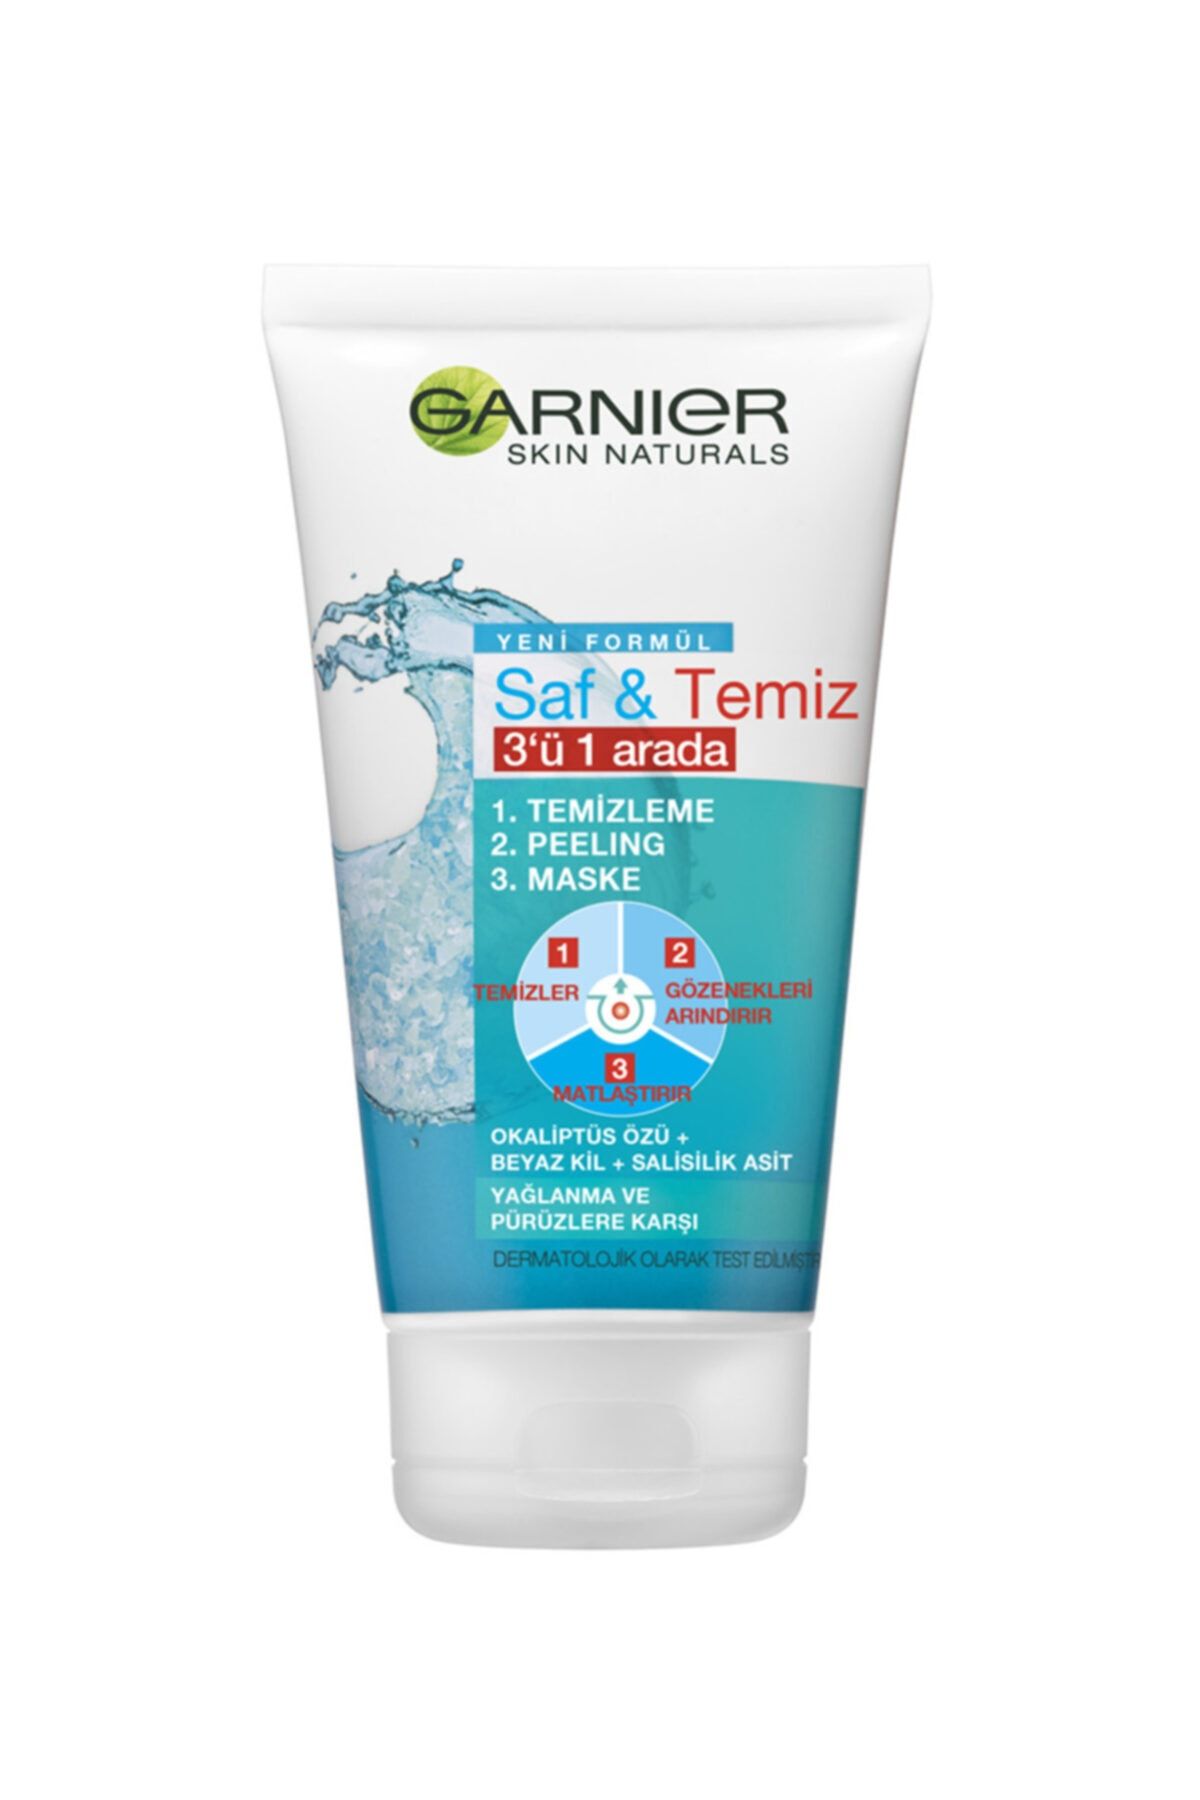 Garnier Skin Naturals Saf Ve Temiz 3ü 1 Arada Temizleme + Peeling + Maske 150 Ml